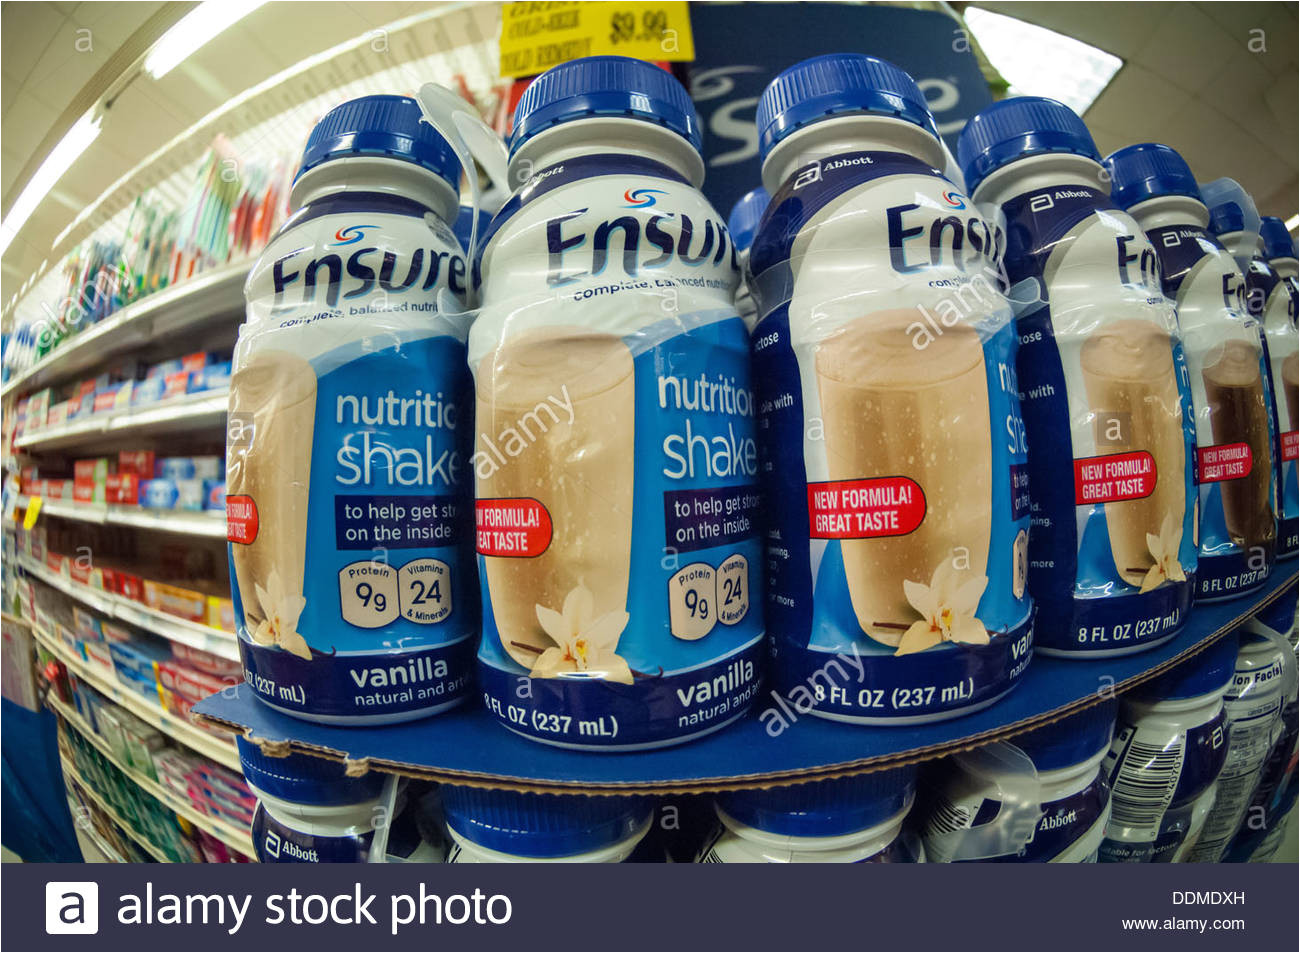 flaschen sicher ernahrungs shakes sind in einem supermarkt in new york gesehen stockbild